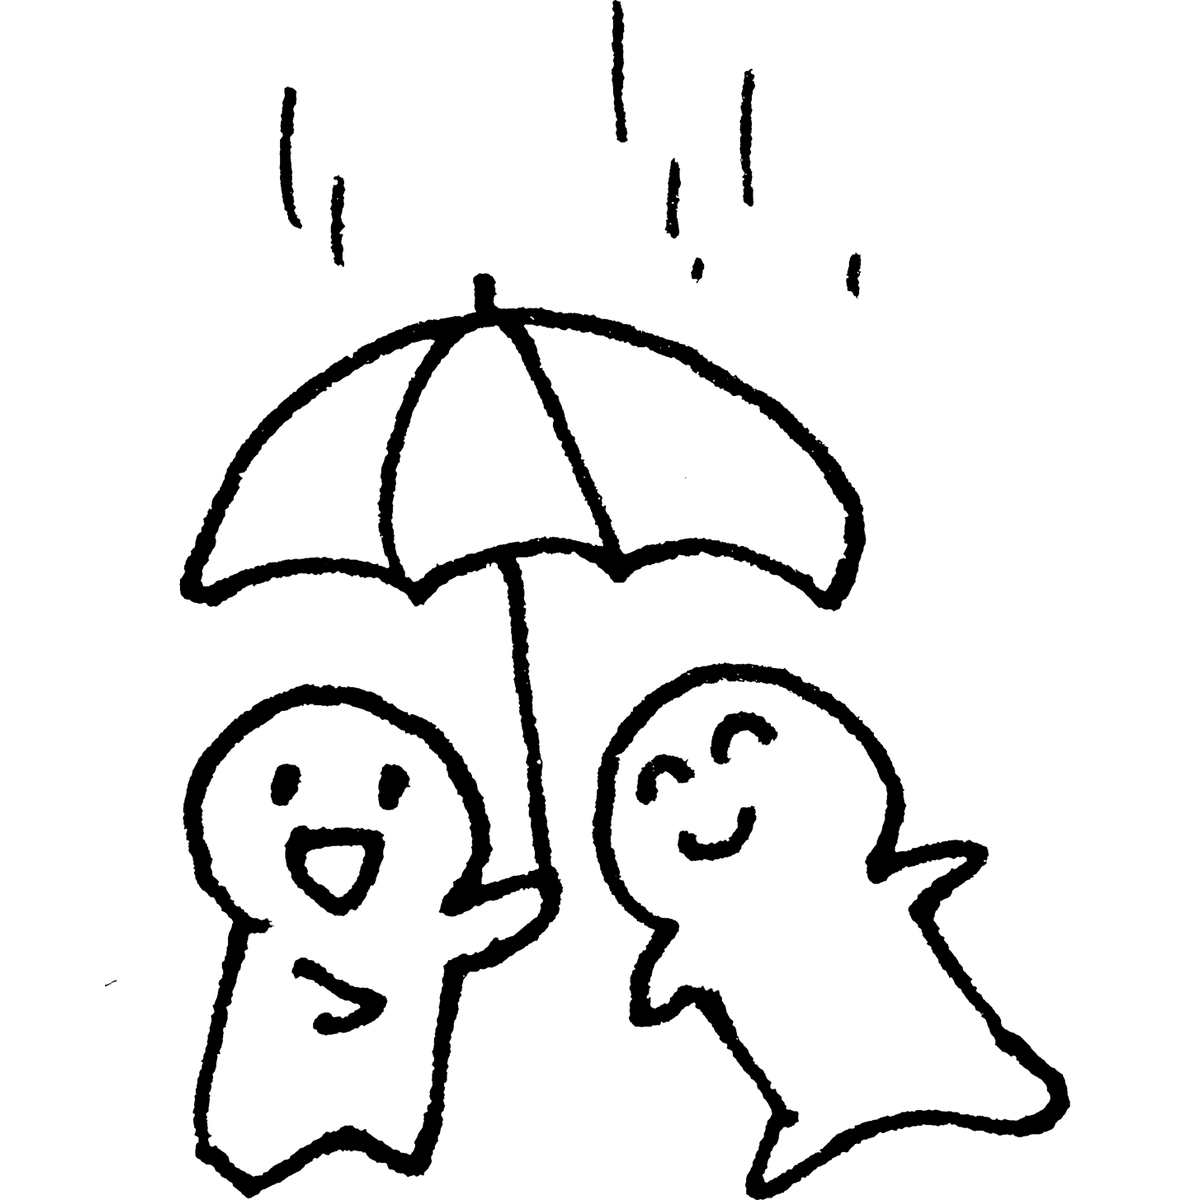 傘をシェアするのイラスト / Share an umbrella Illustration